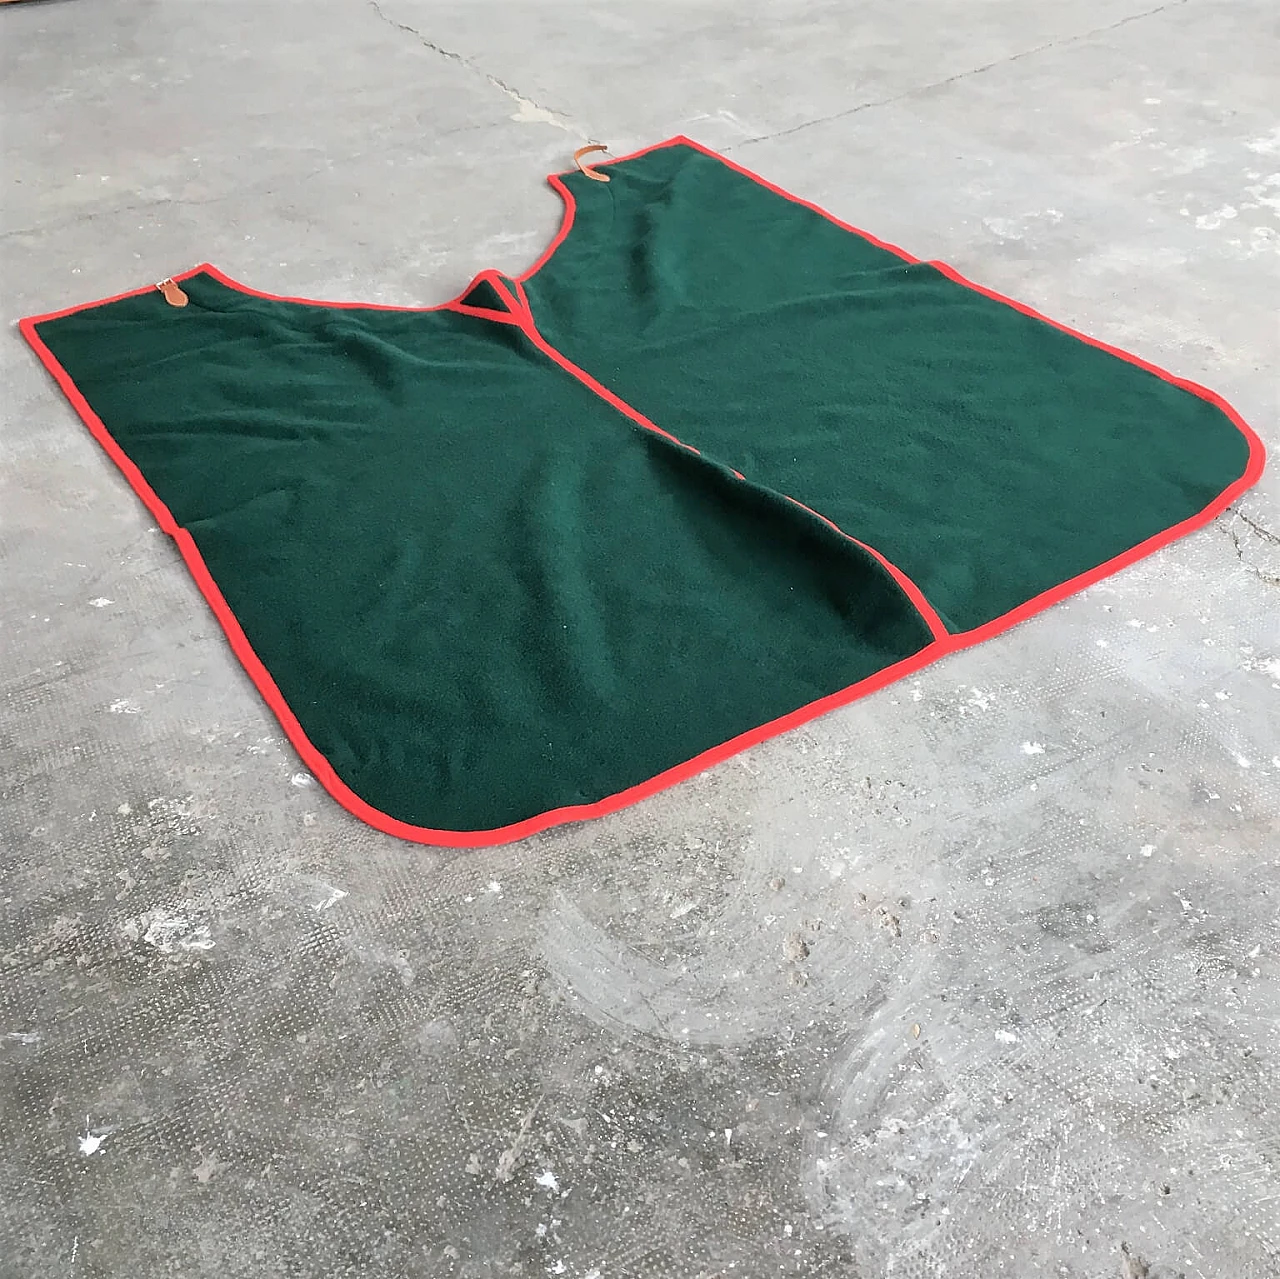 Coperta verde Selleria Pariani, realizzata a mano, pura lana vergine, profili rossi e cuoio, 1980 1071700